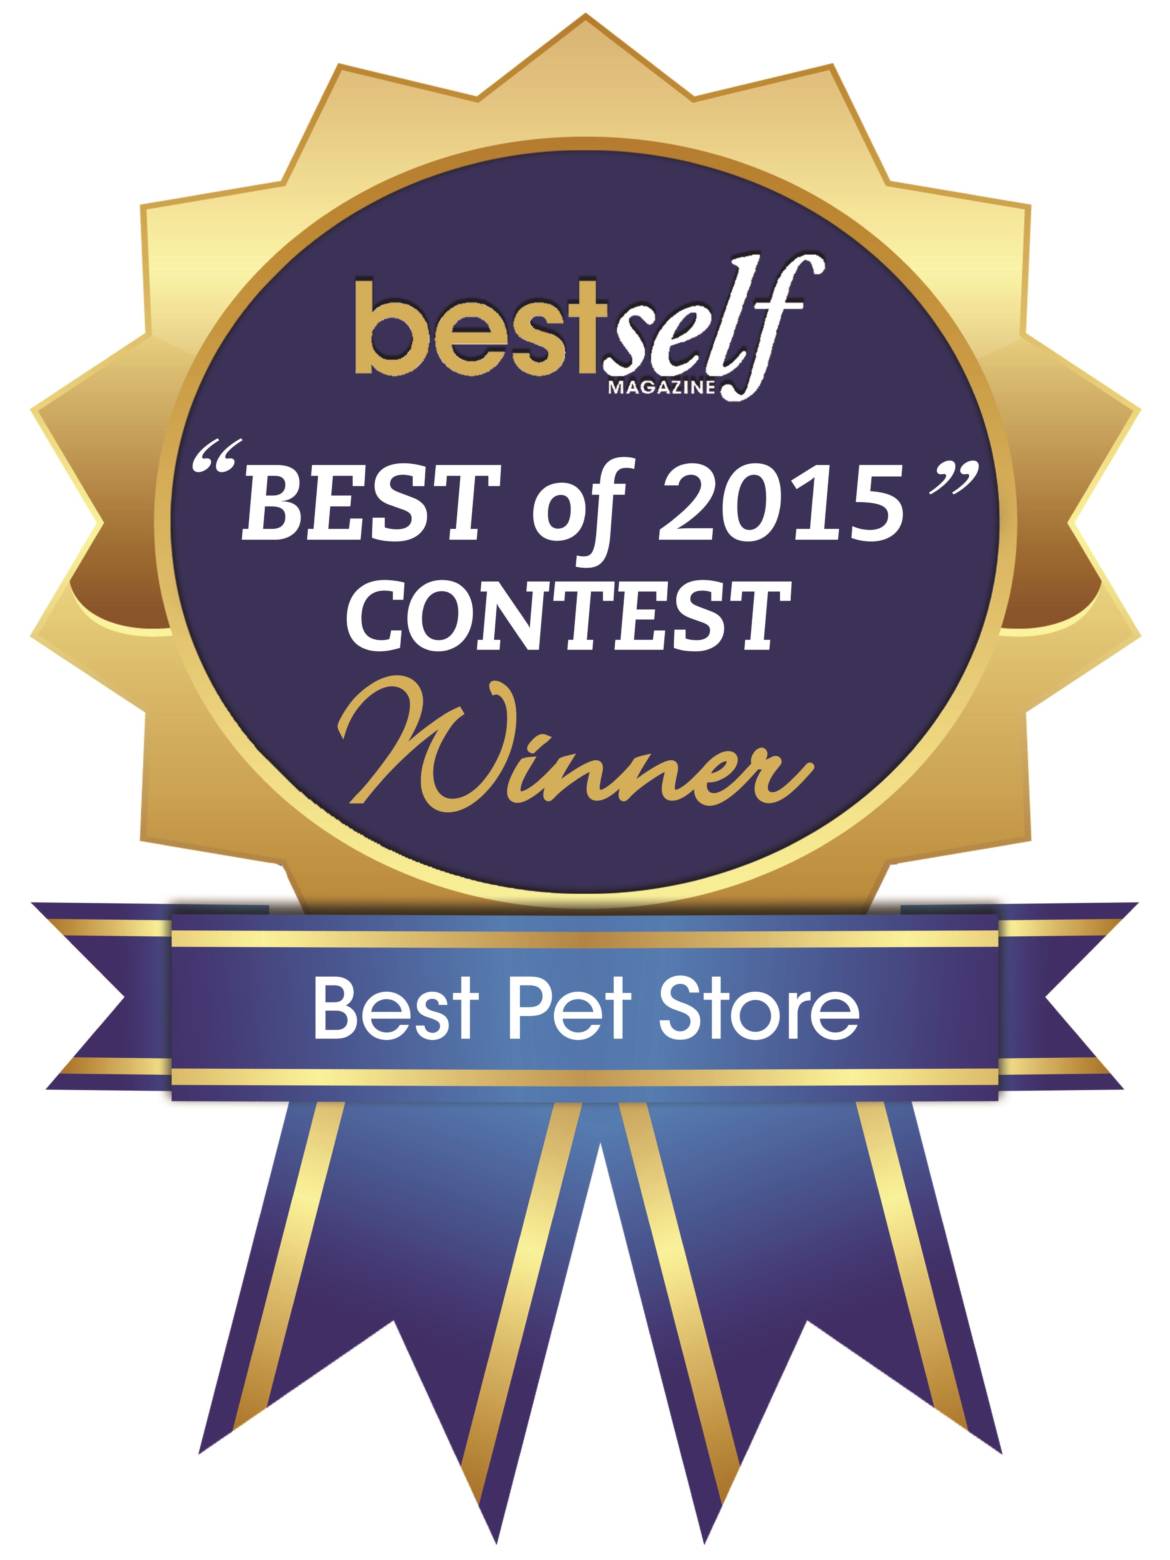 bestself_contest_winner_2015-1.jpg